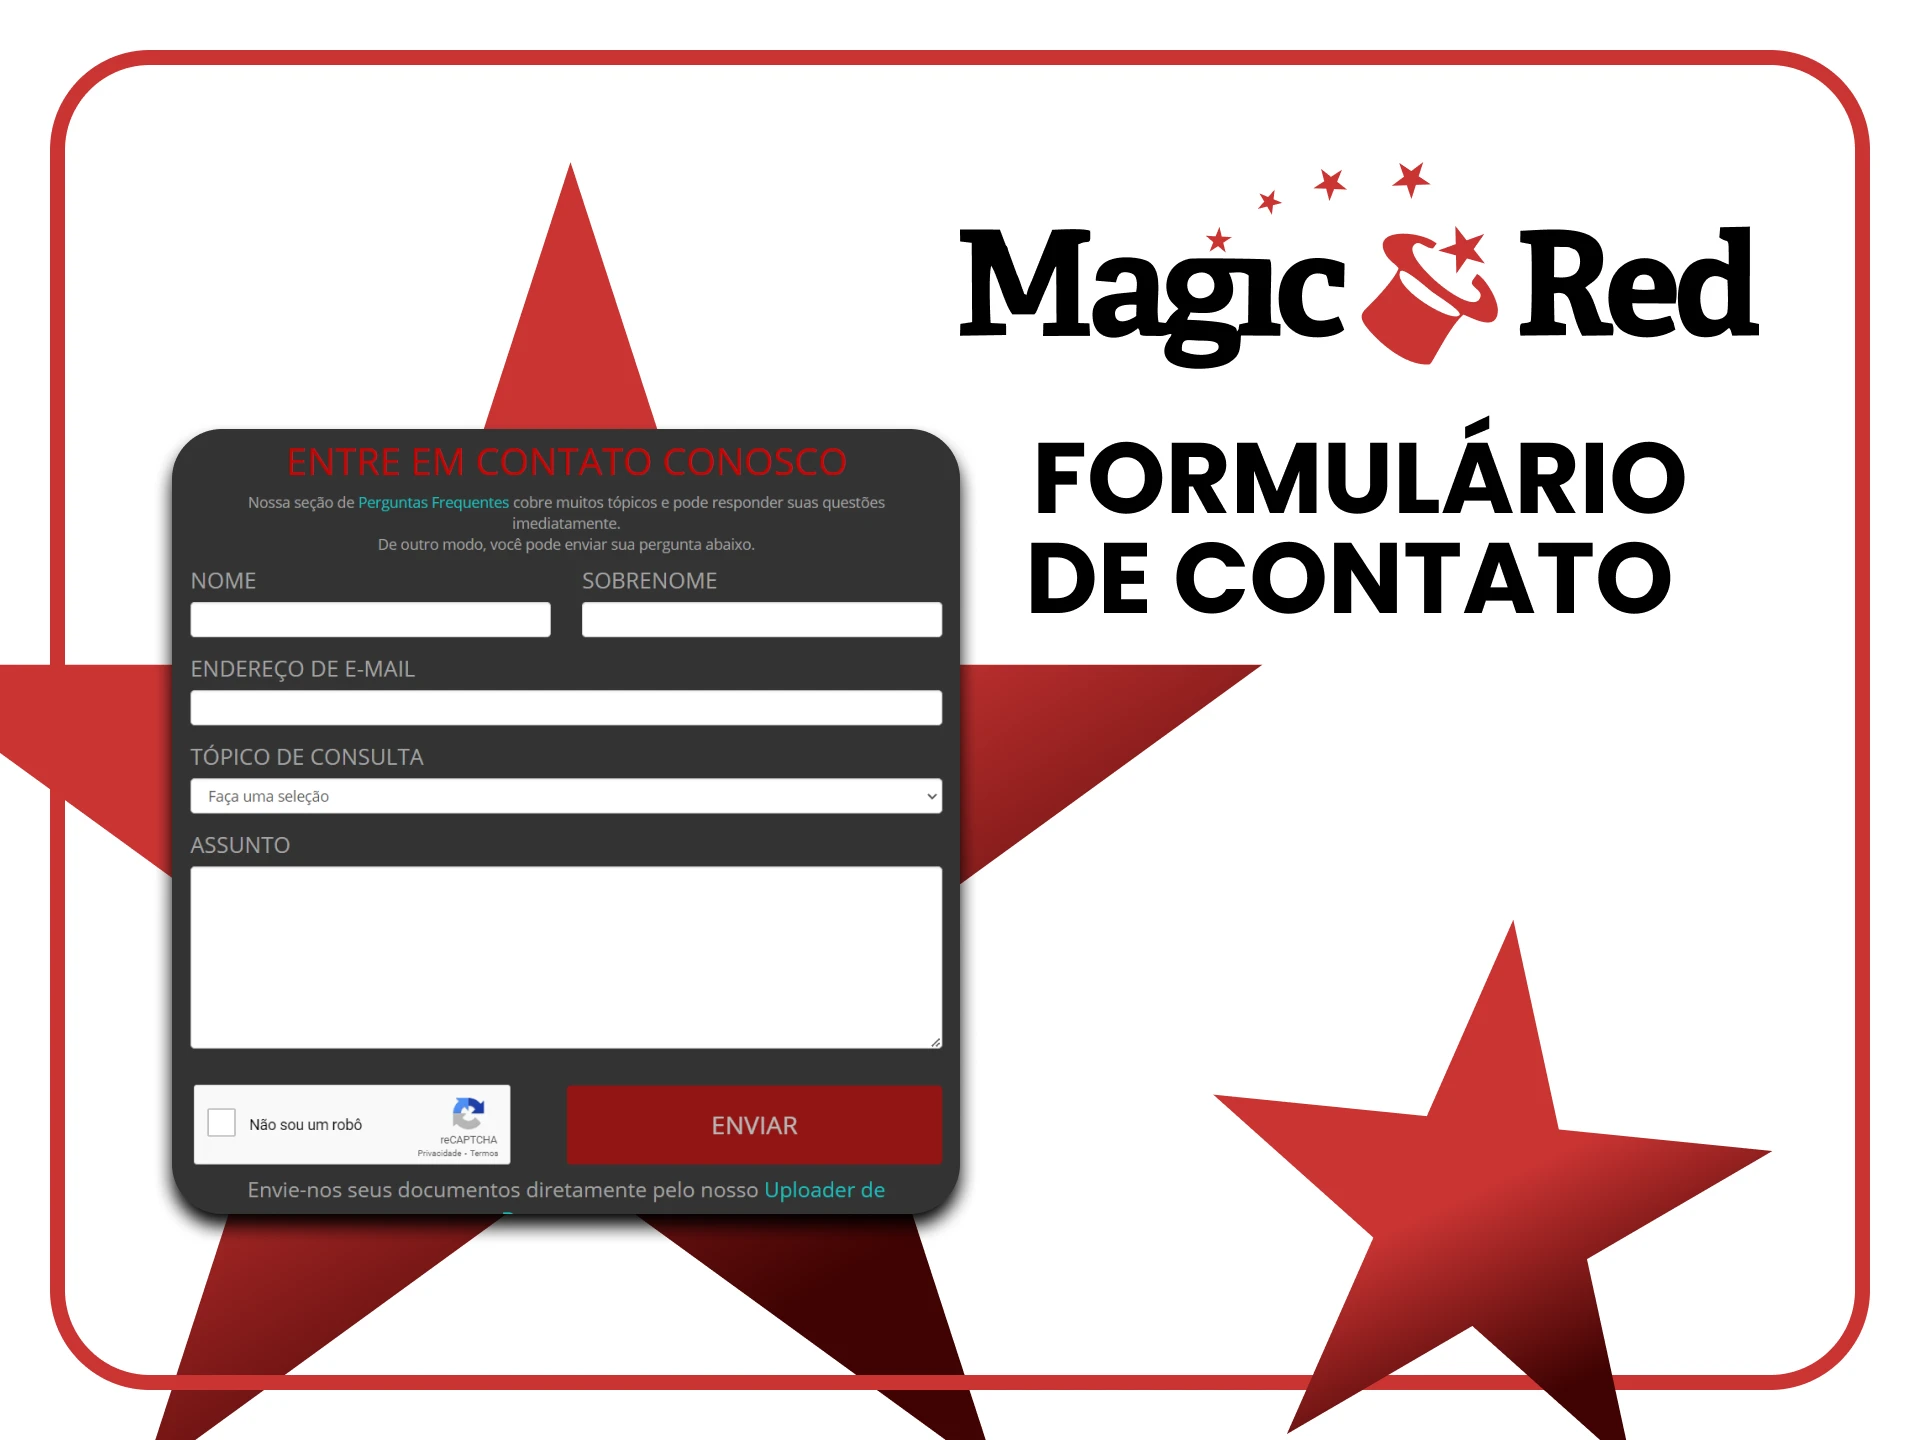 Você pode entrar em contato com a equipe MagicRed através de um formulário especial.